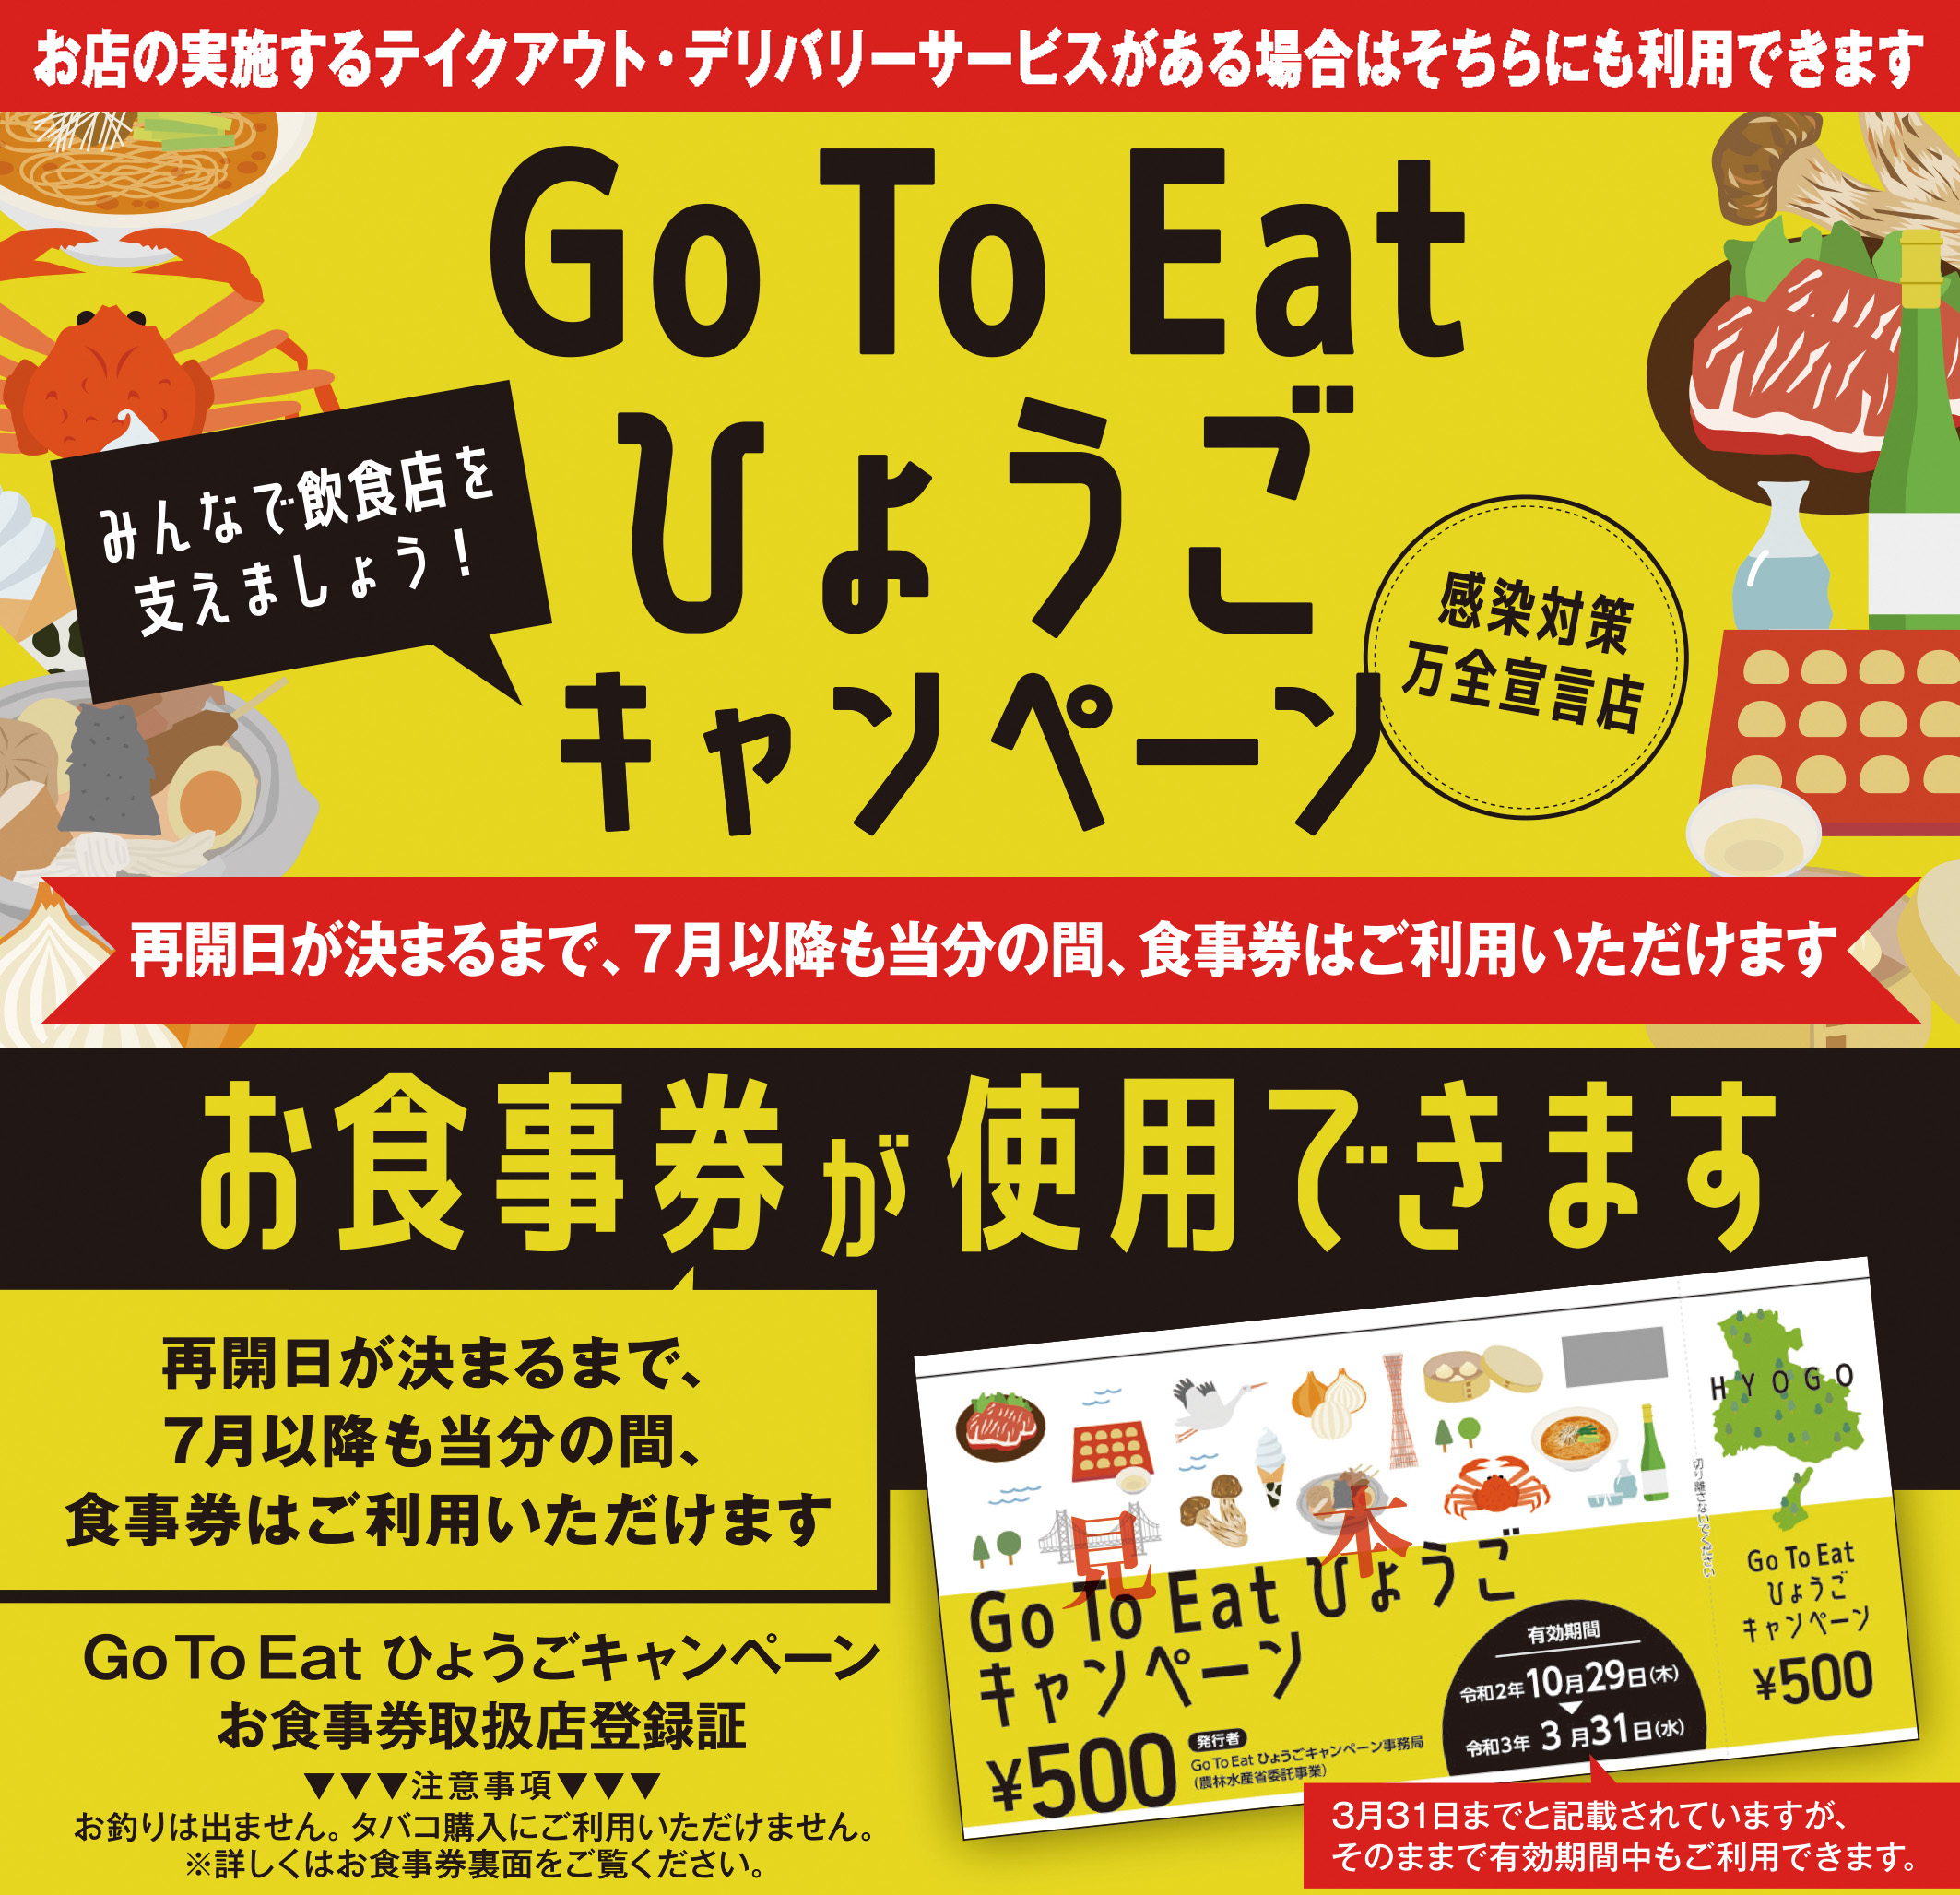 Go To Eat ひょうごキャンペーンについて(11/30更新)